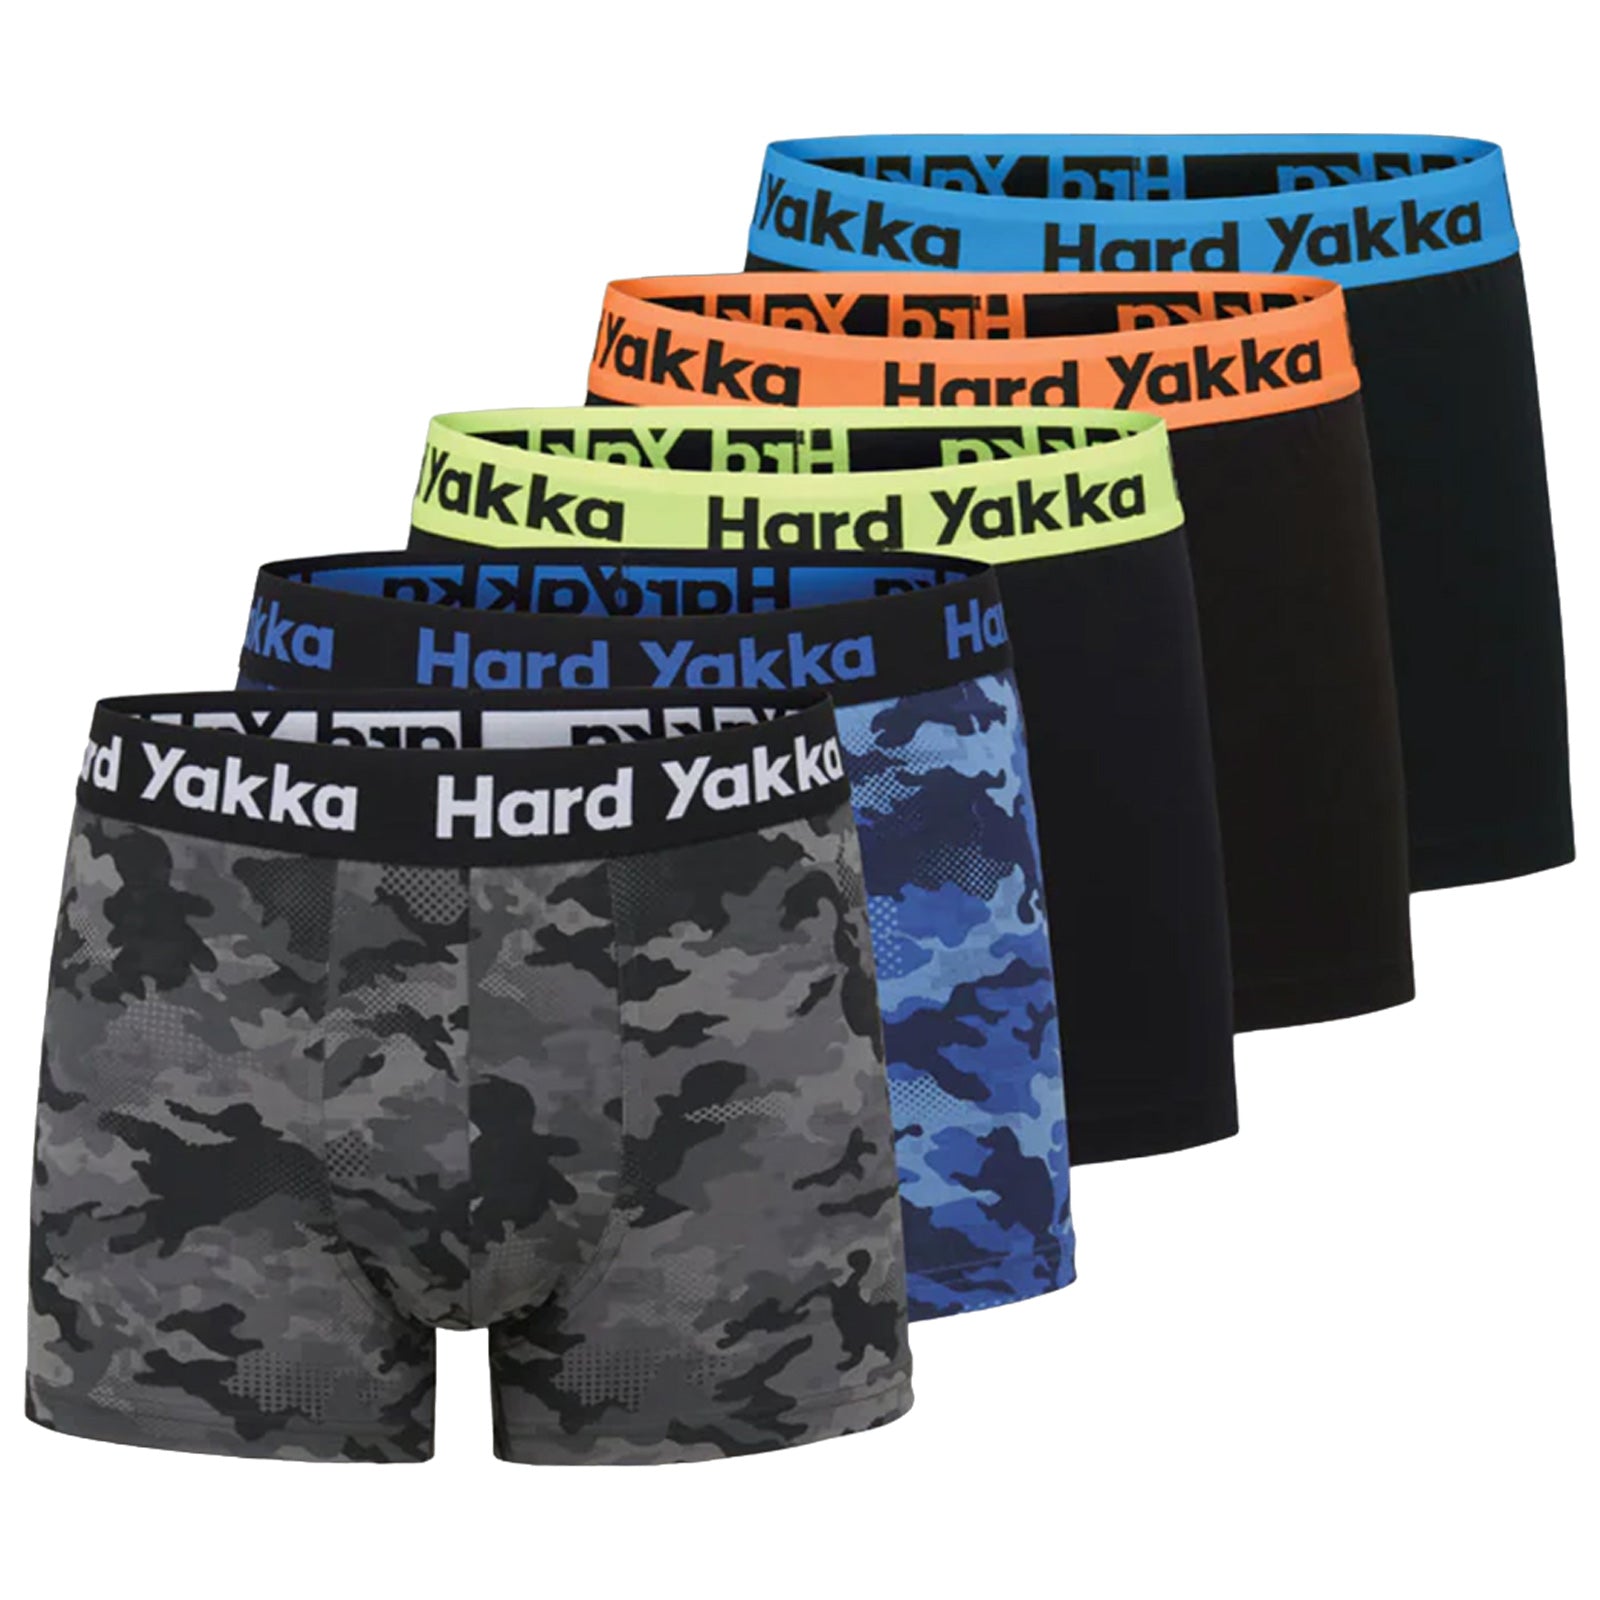 Hard Yakka Mens Cotton Boxers (5 Pack)